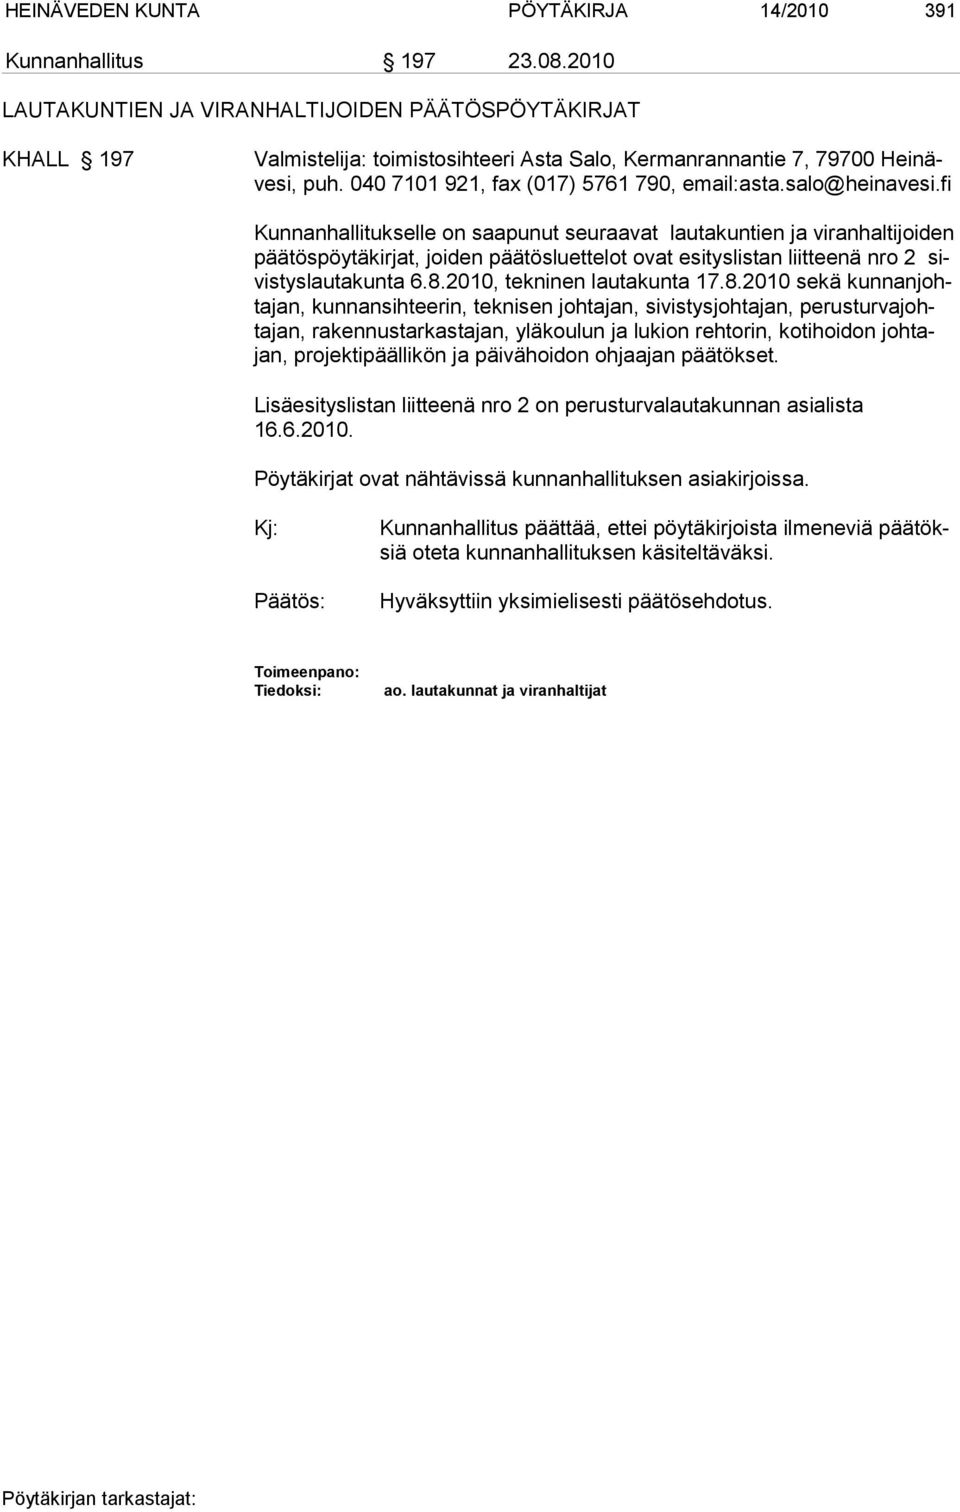 salo@heinavesi.fi Kunnanhallitukselle on saapunut seuraavat lautakuntien ja viranhaltijoiden pää tös pöy tä kirjat, joiden päätösluettelot ovat esityslistan liitteenä nro 2 sivistyslautakunta 6.8.